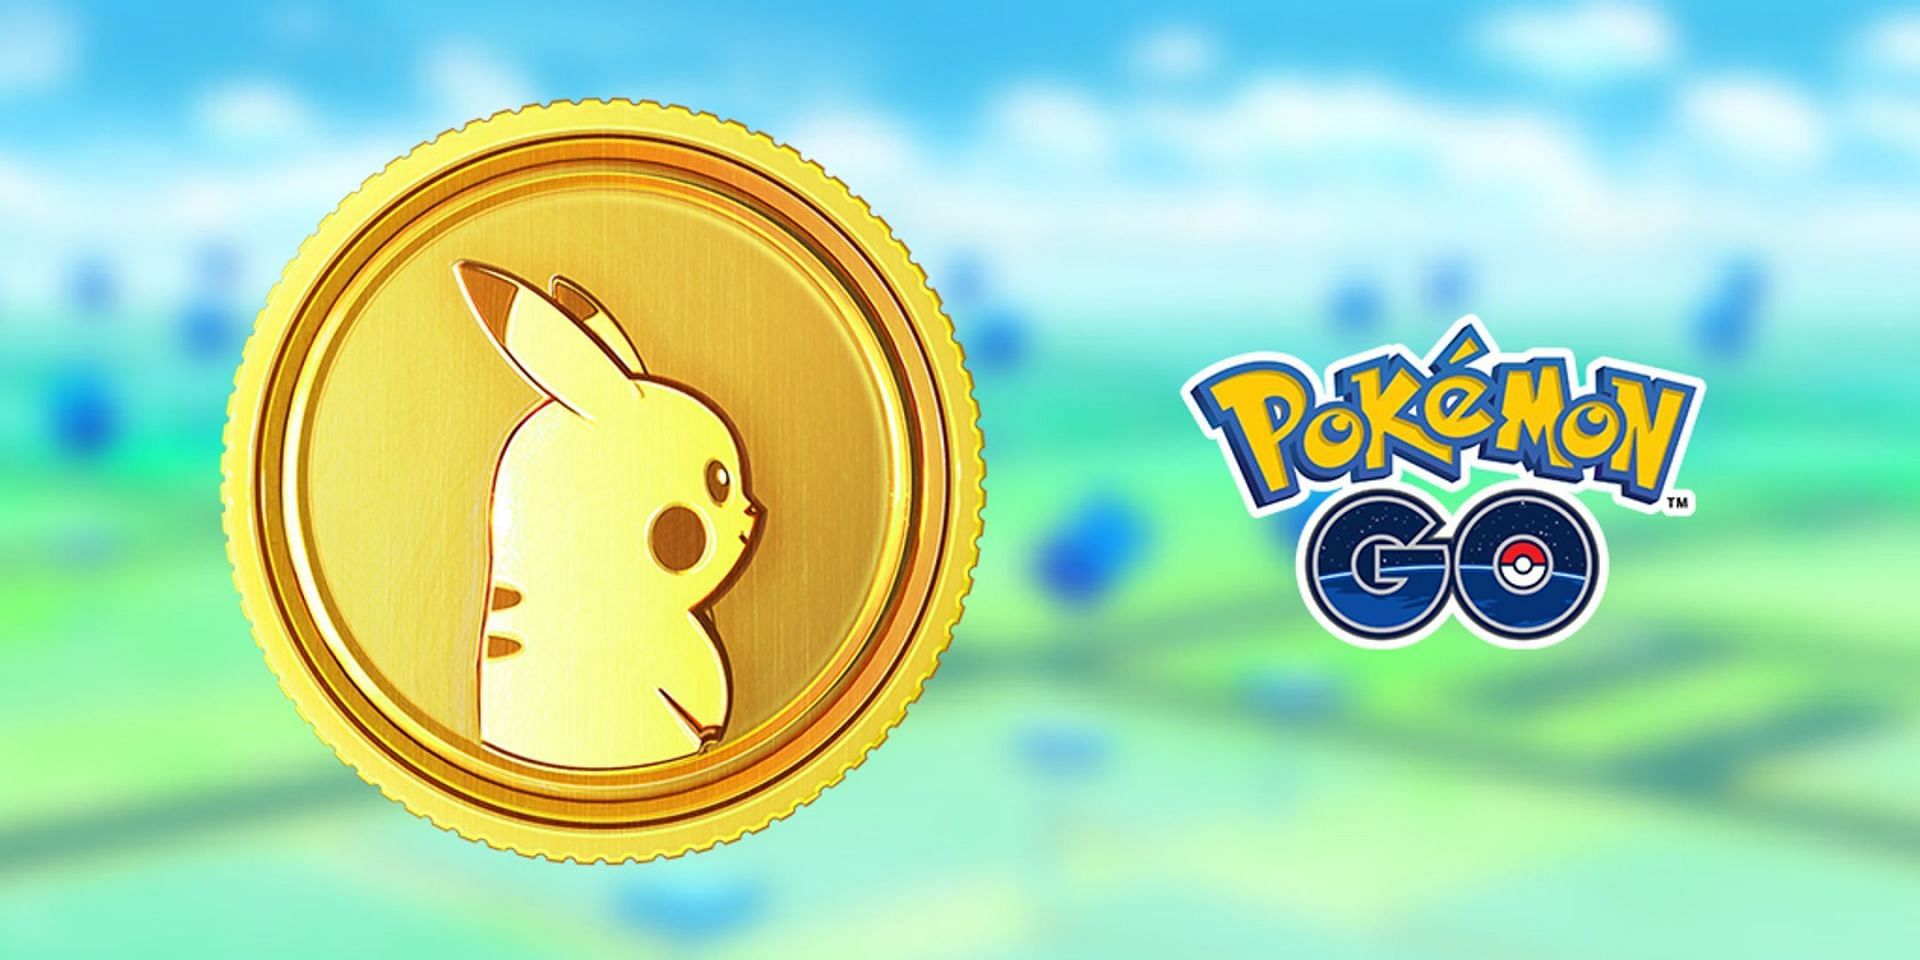 The Pokecoin symbol used in Pokemon GO (Image via Niantic)